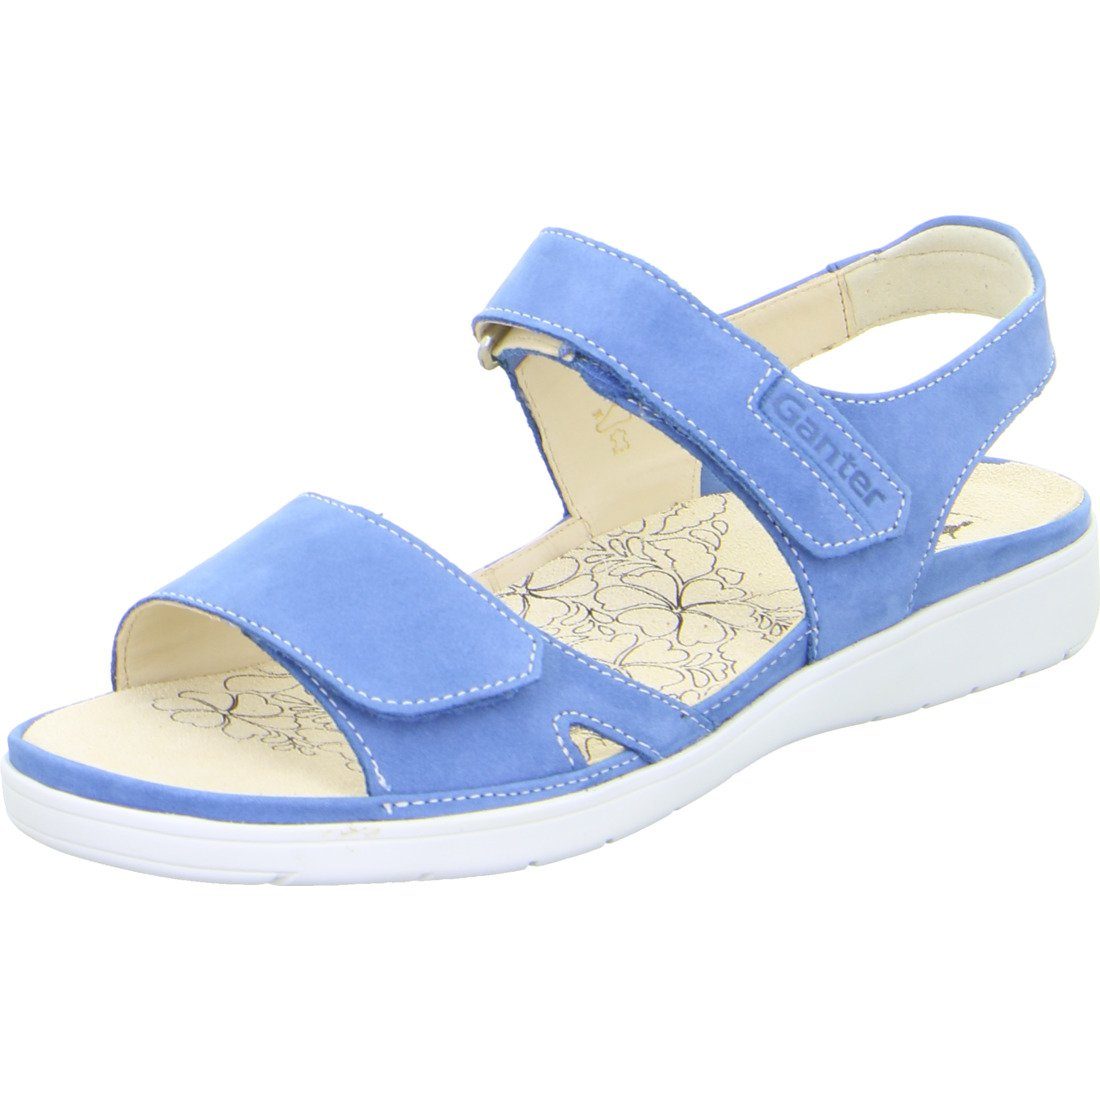 Ganter Ganter Schuhe, Sandalette Gina - Nubuk Damen Sandalette blau 048801